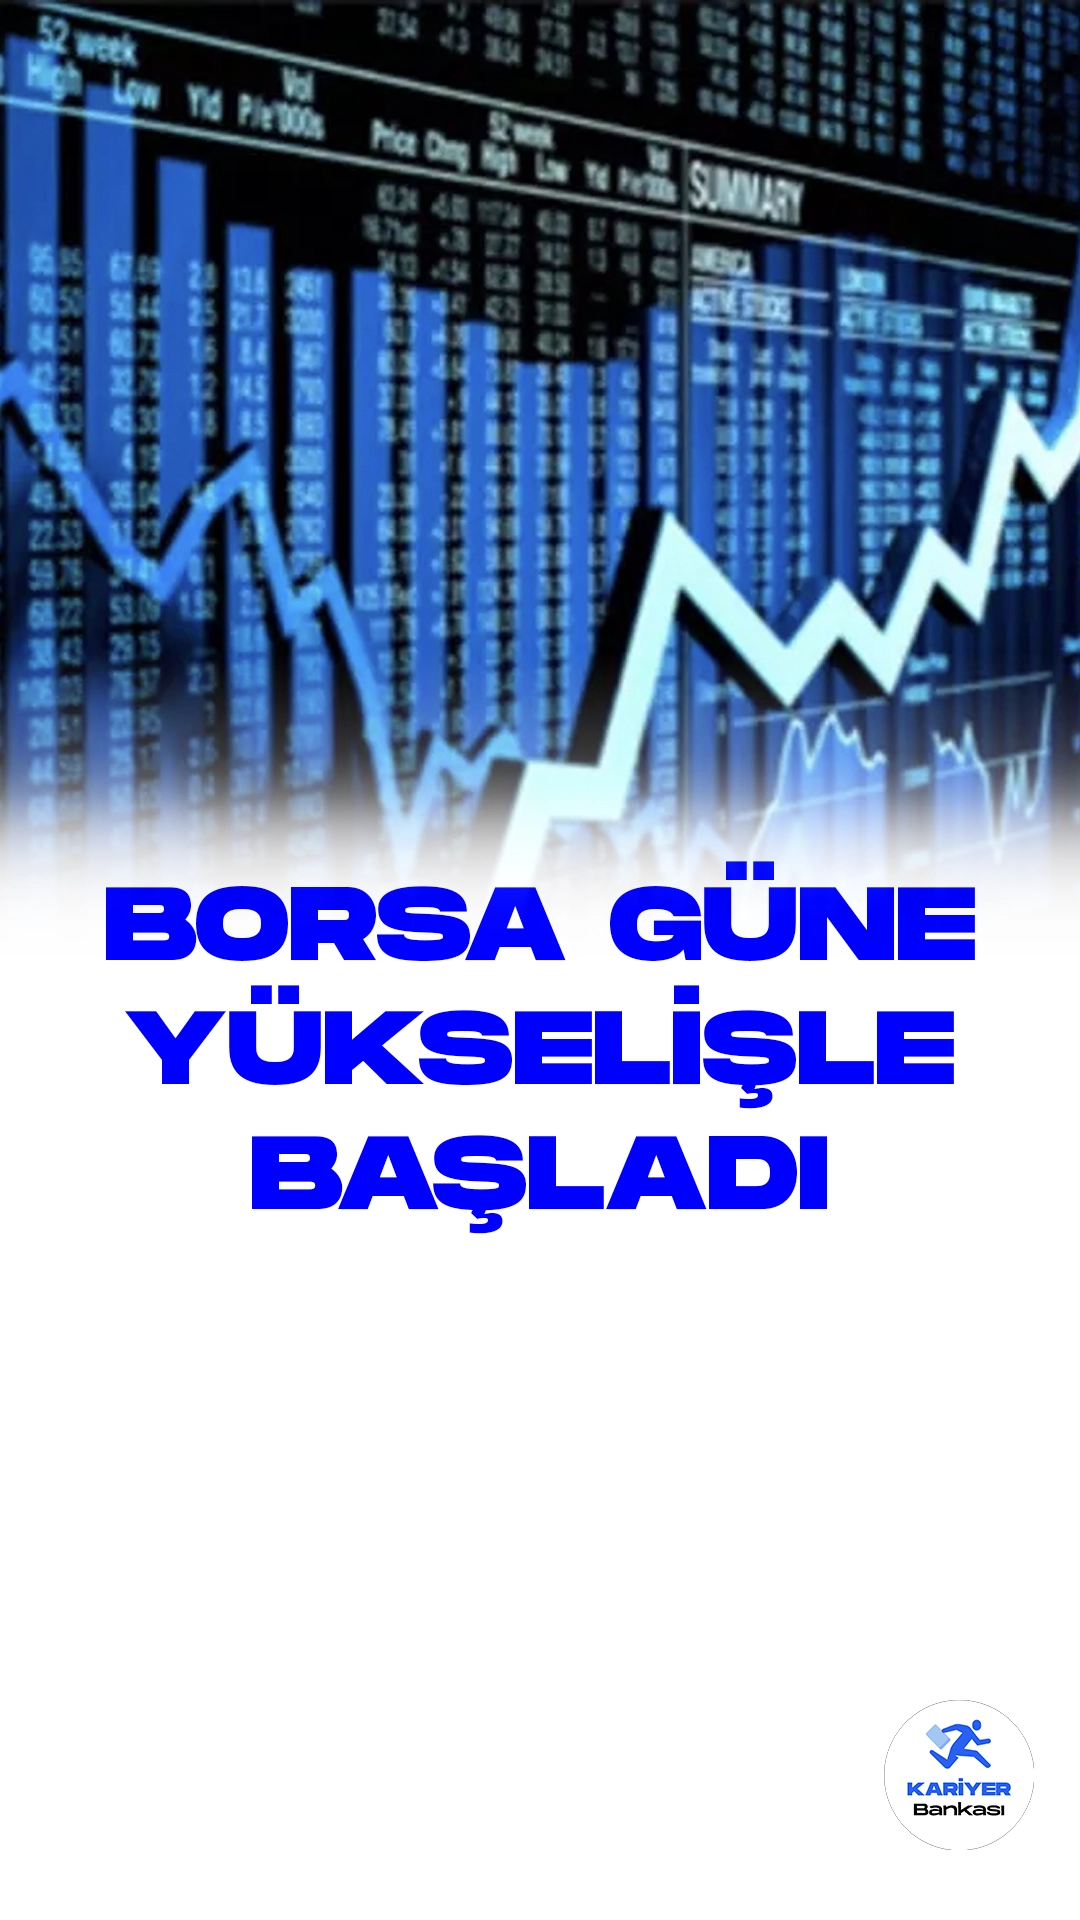 Borsa İstanbul Güne Yükselişle Başladı: BIST 100 Endeksi 7.867,68 Puanla Açılışı Yaptı.Borsa İstanbul'da işlem gören BIST 100 endeksi, güne başlangıcı itibariyle yüzde 0,16 artışla 7.867,68 puan seviyesinden açıldı. Açılışta, BIST 100 endeksi önceki kapanışa göre 12,63 puanlık bir artış kaydederek yüzde 0,16 oranında değer kazandı.